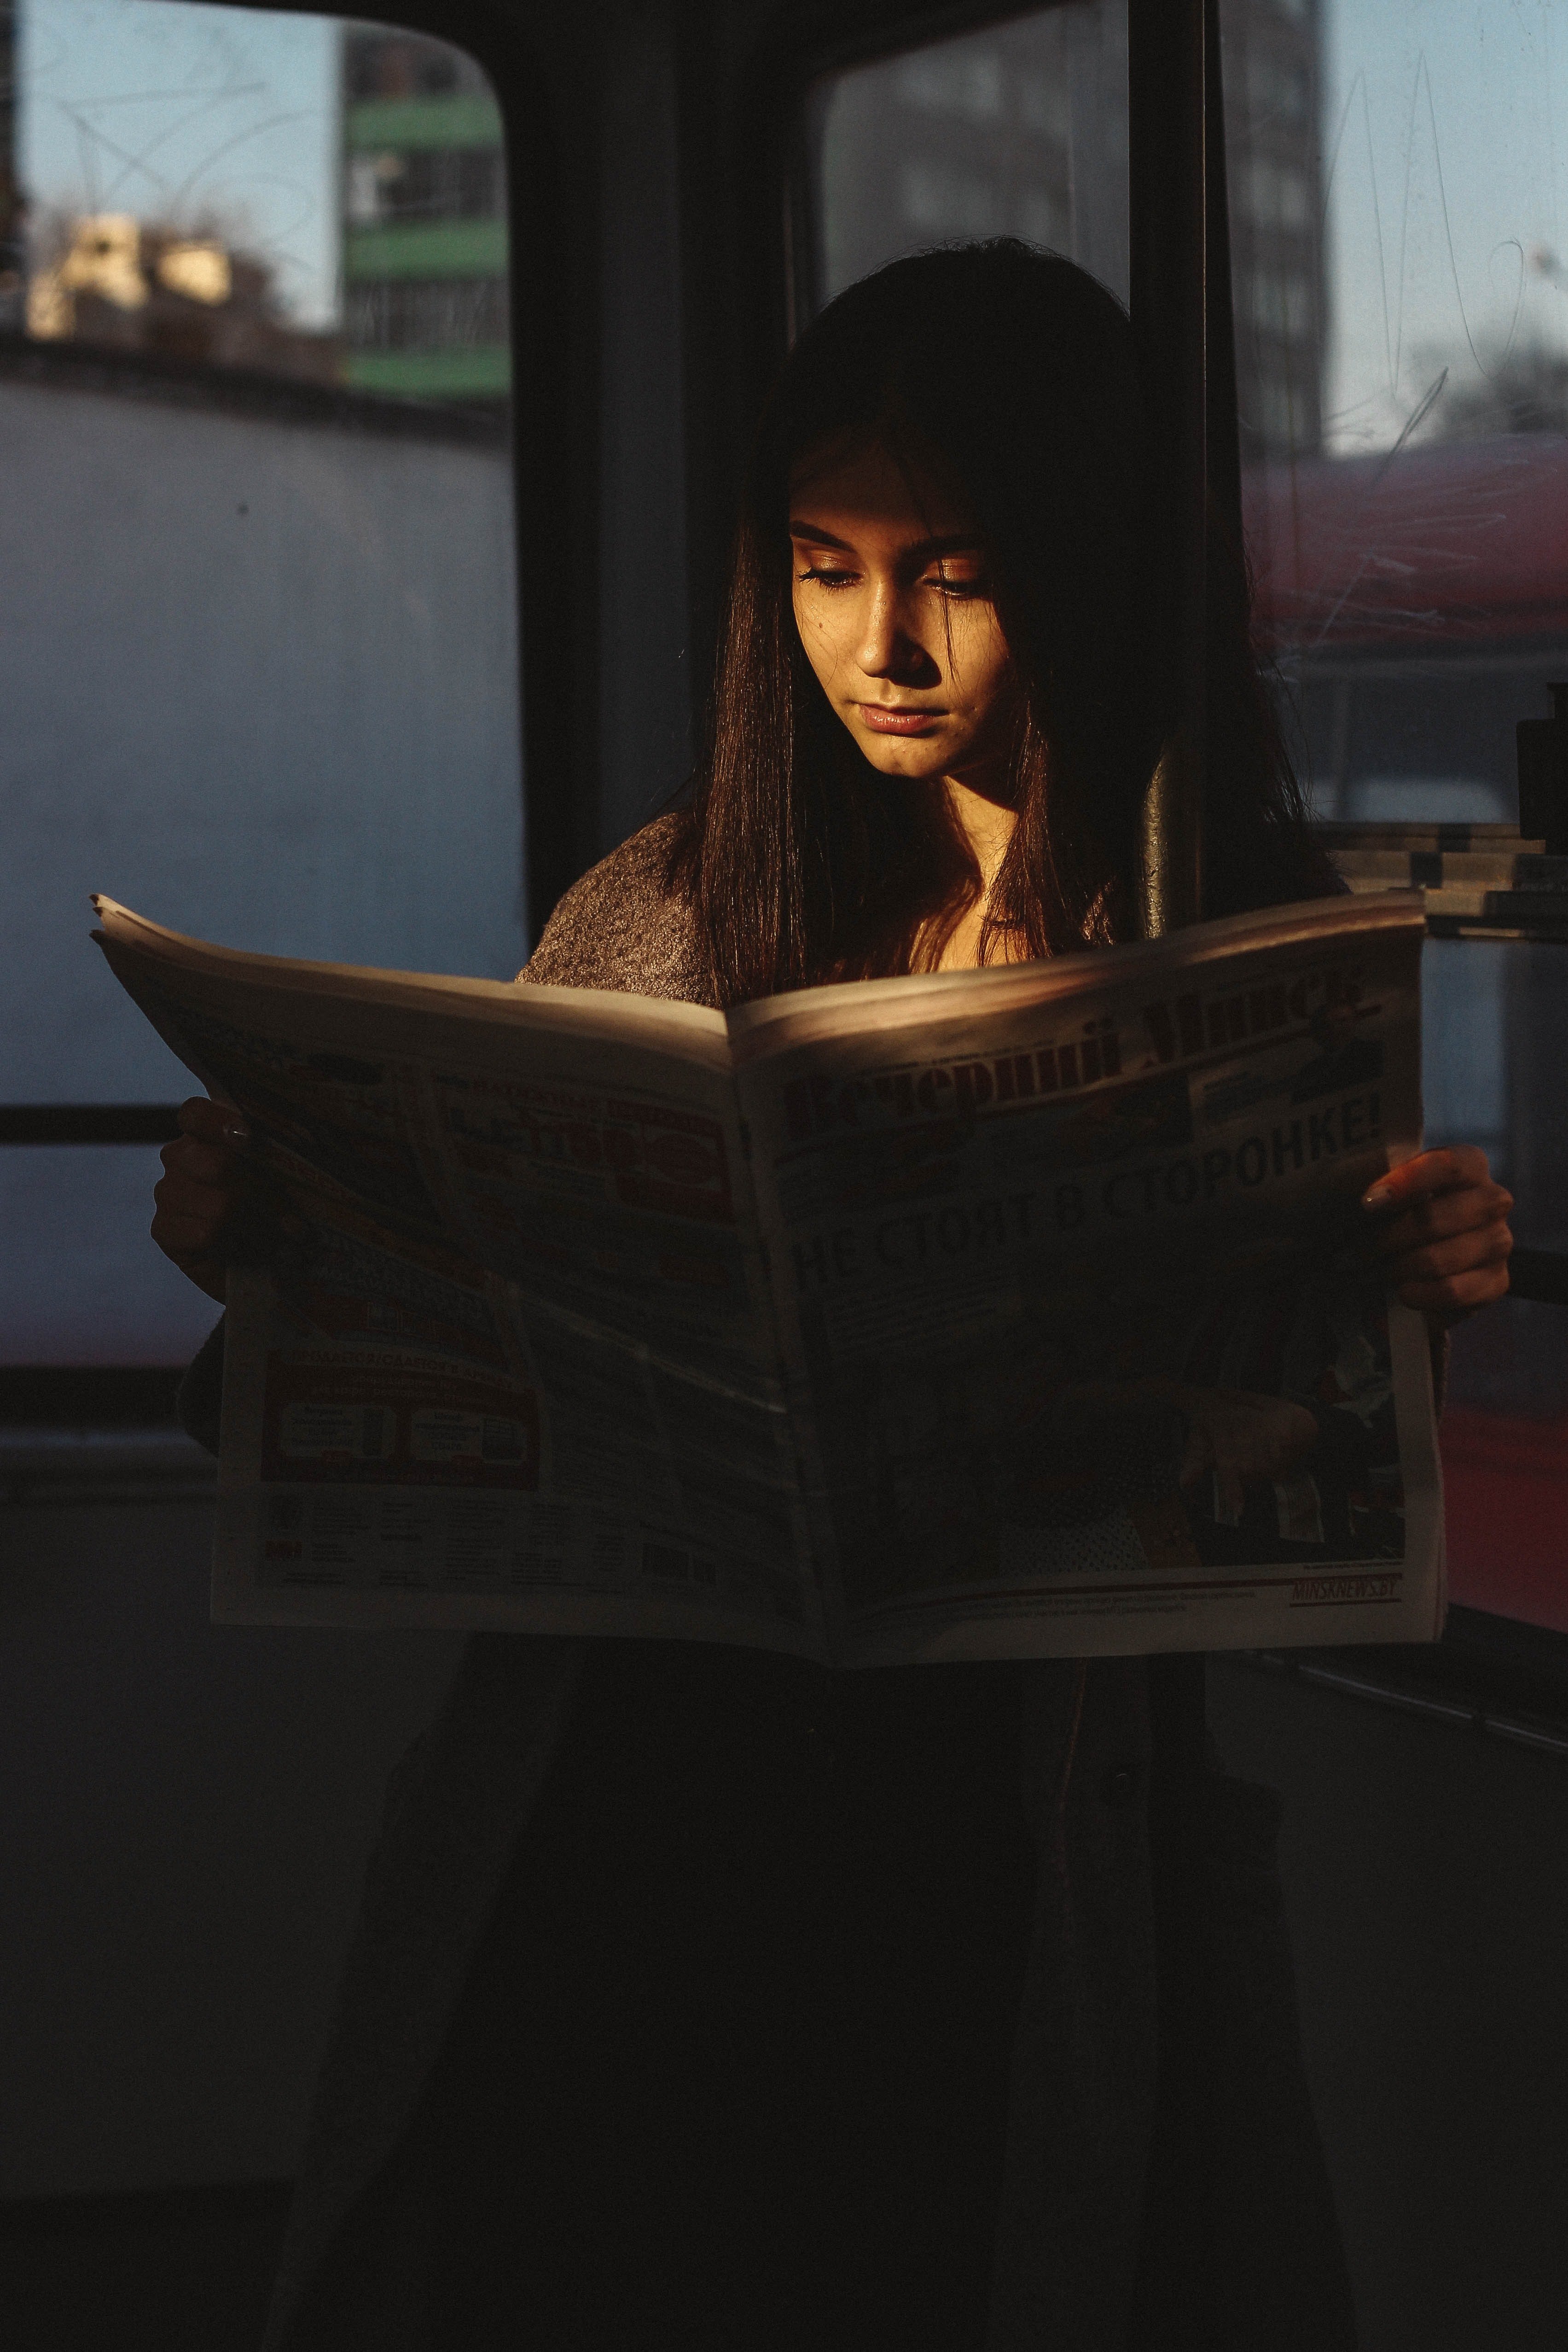 Carla entdeckte ihr Bild in einer Zeitung | Foto: Pexels